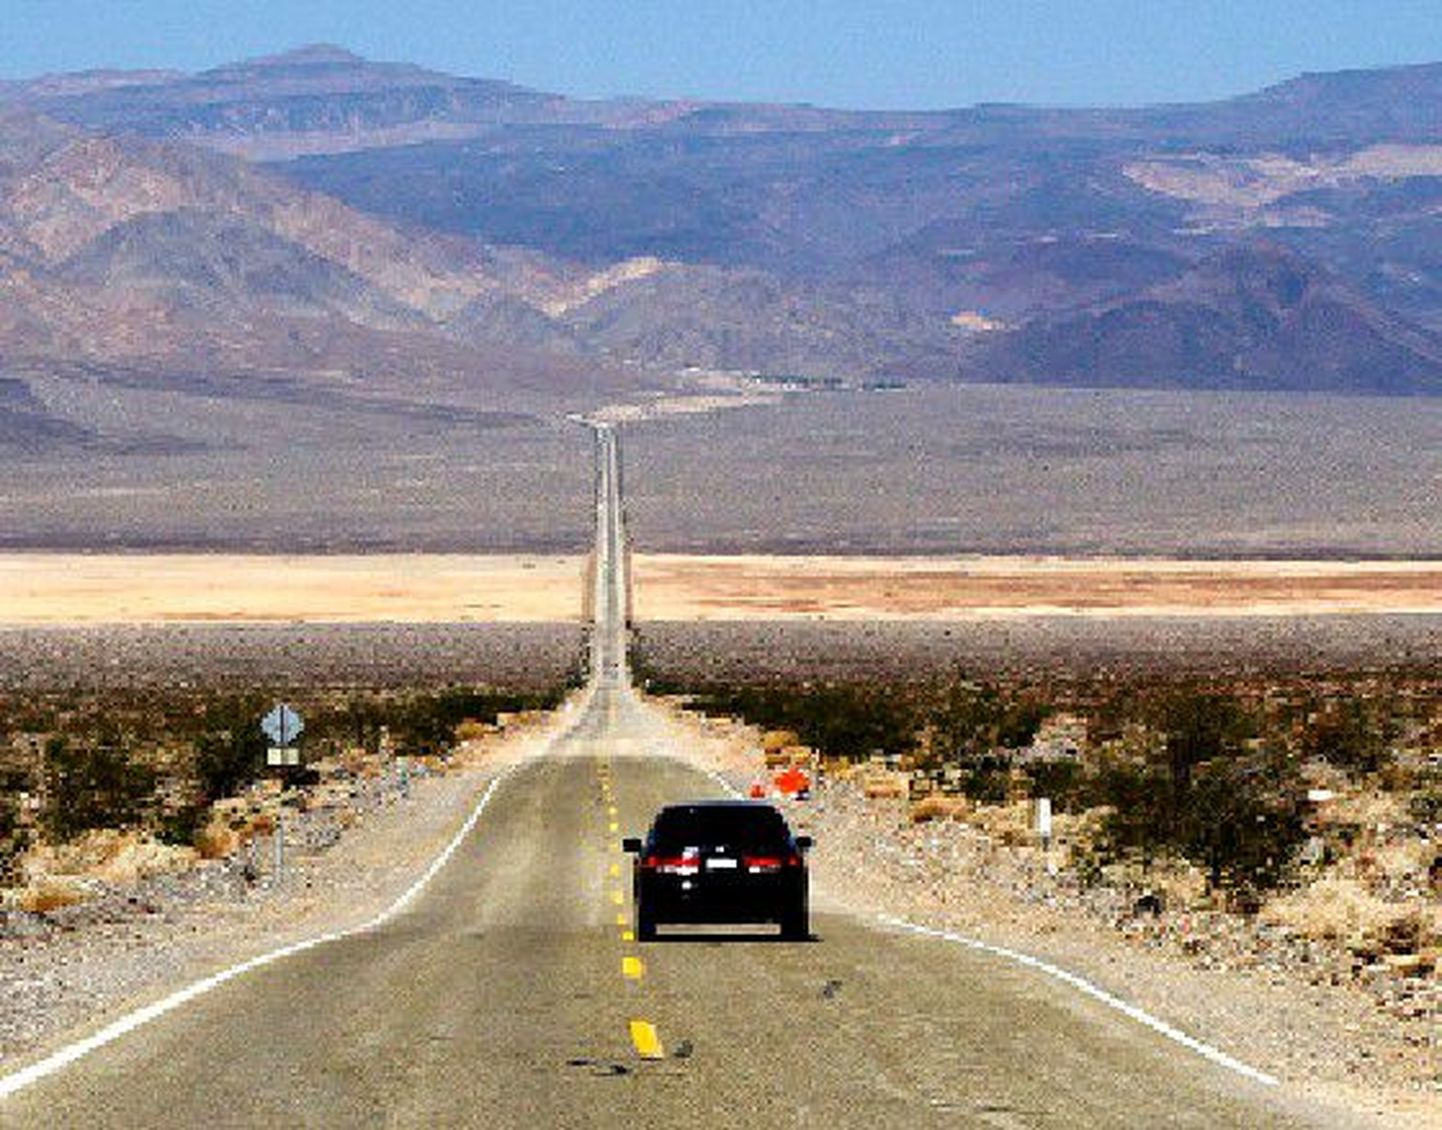 Ameerika on suur maa, kus autoteedel ei paista teinekord lõppu. See tee viib läbi Panaminti oru Californias.